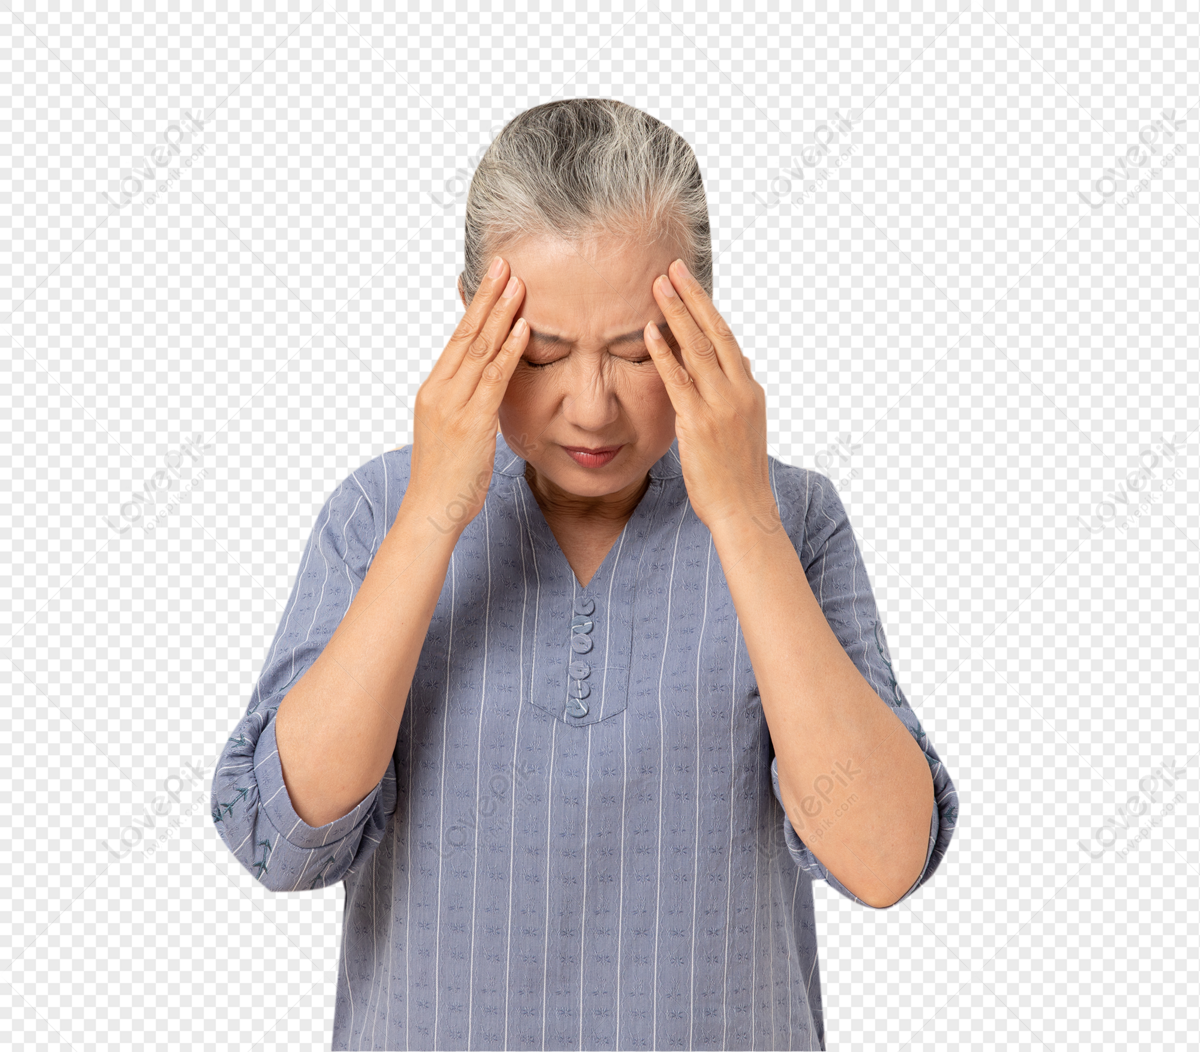 Headache PNG. У бабушки болит голова картинки детям. Старая болит головами